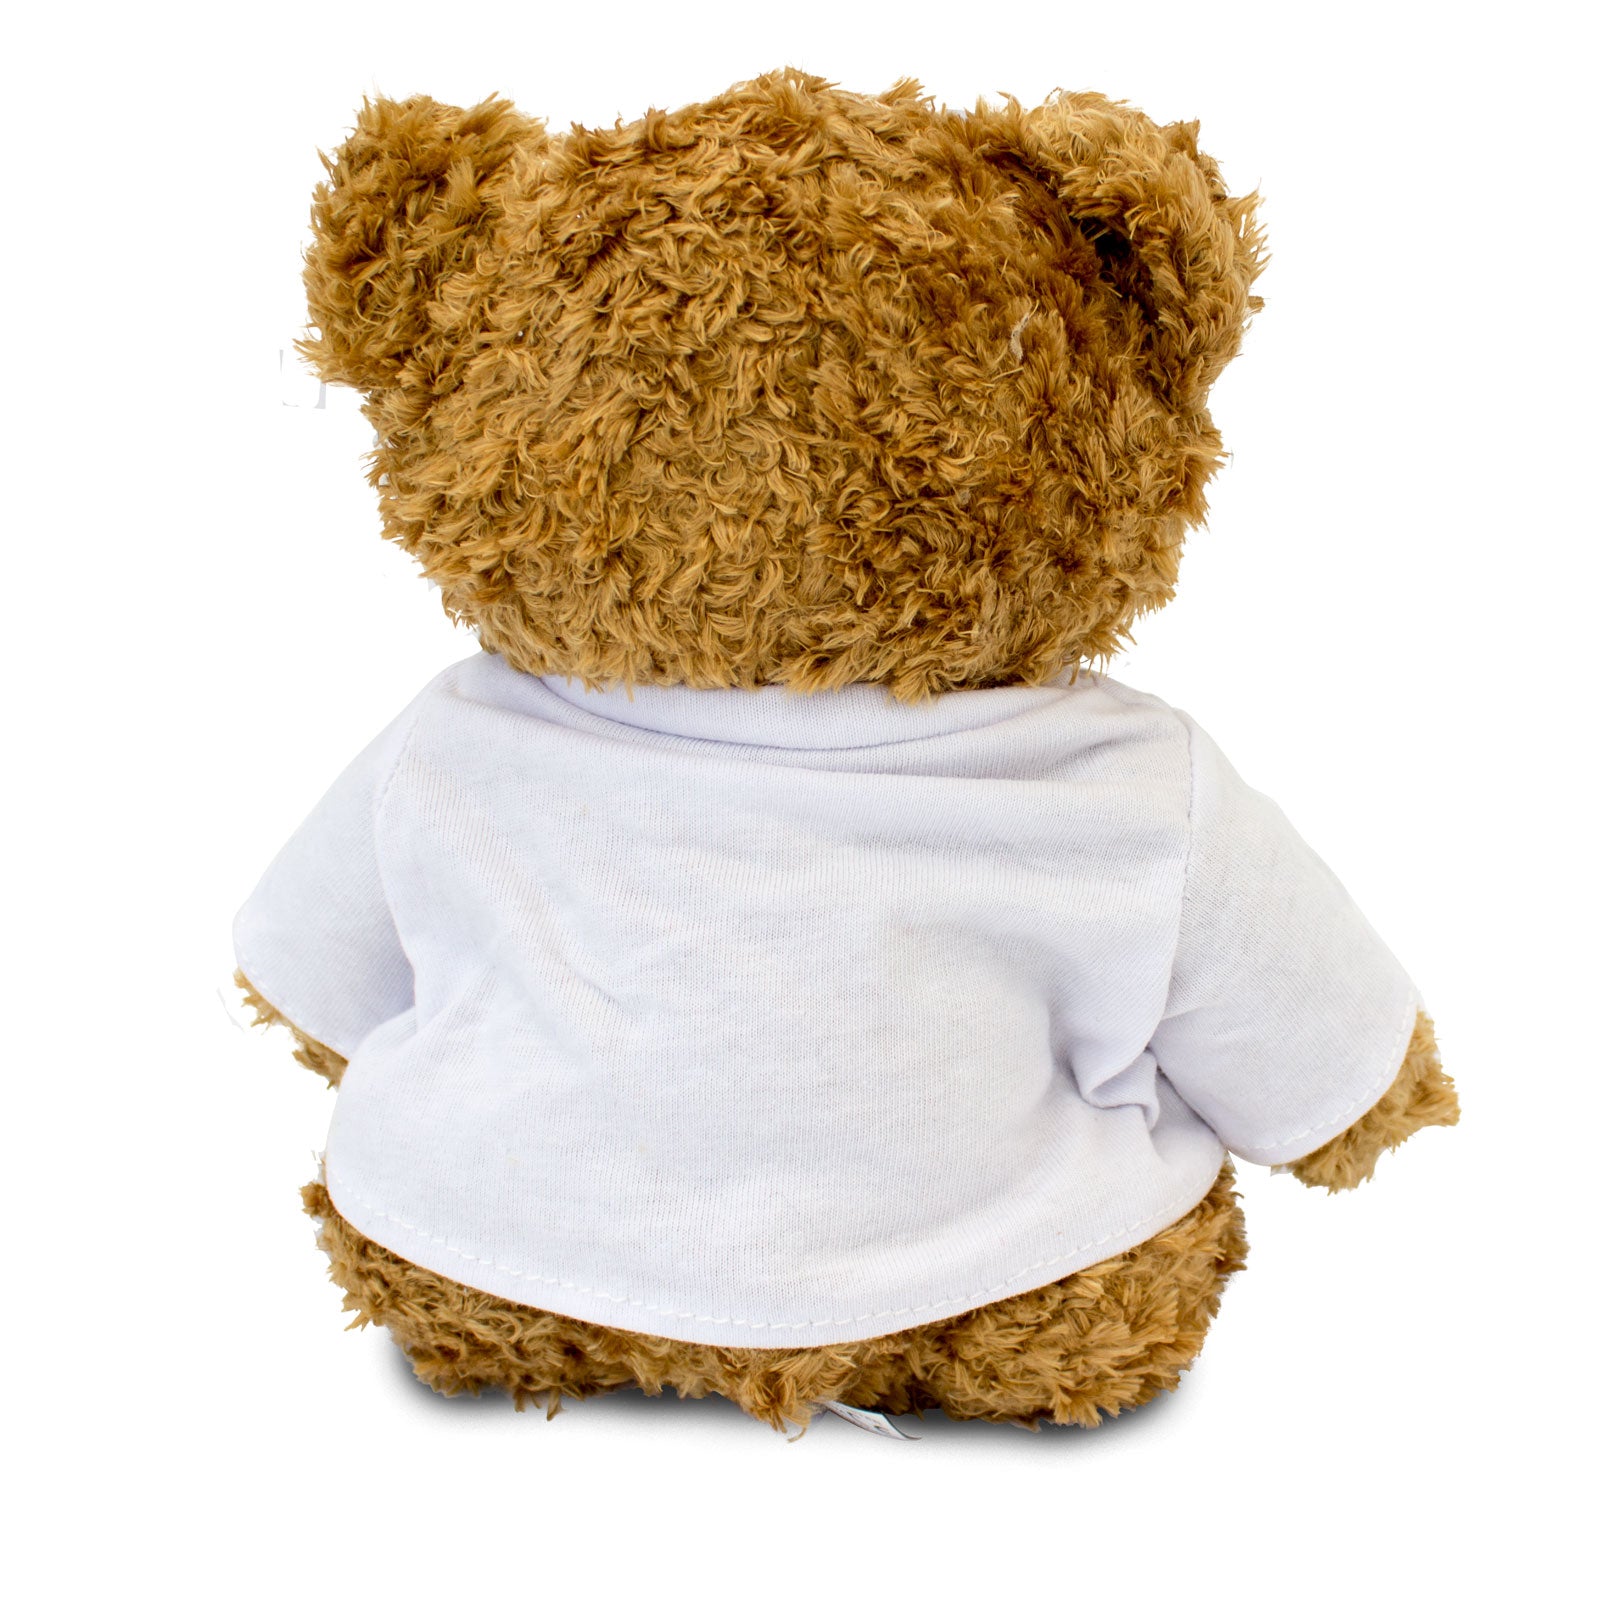 Get Well Soon Alexandrine - Teddy Bear